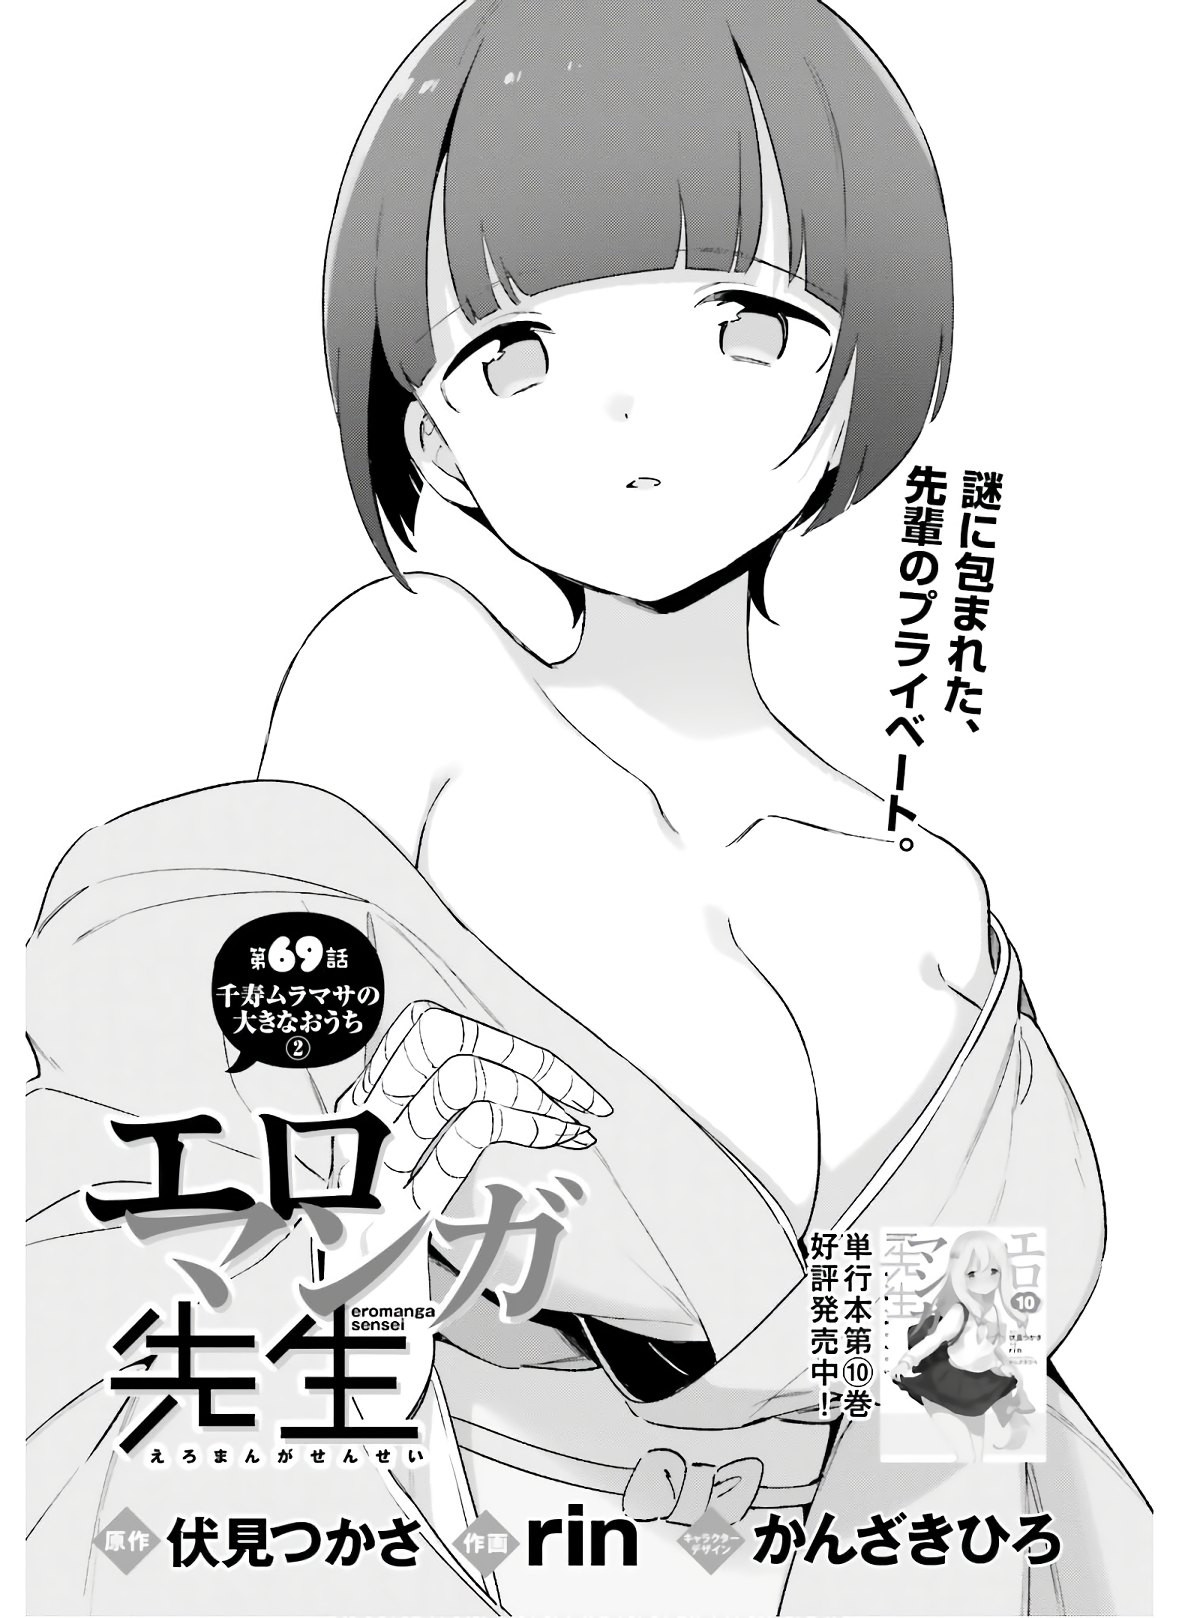 Ero Manga Sensei - Chapter 69 - Page 3